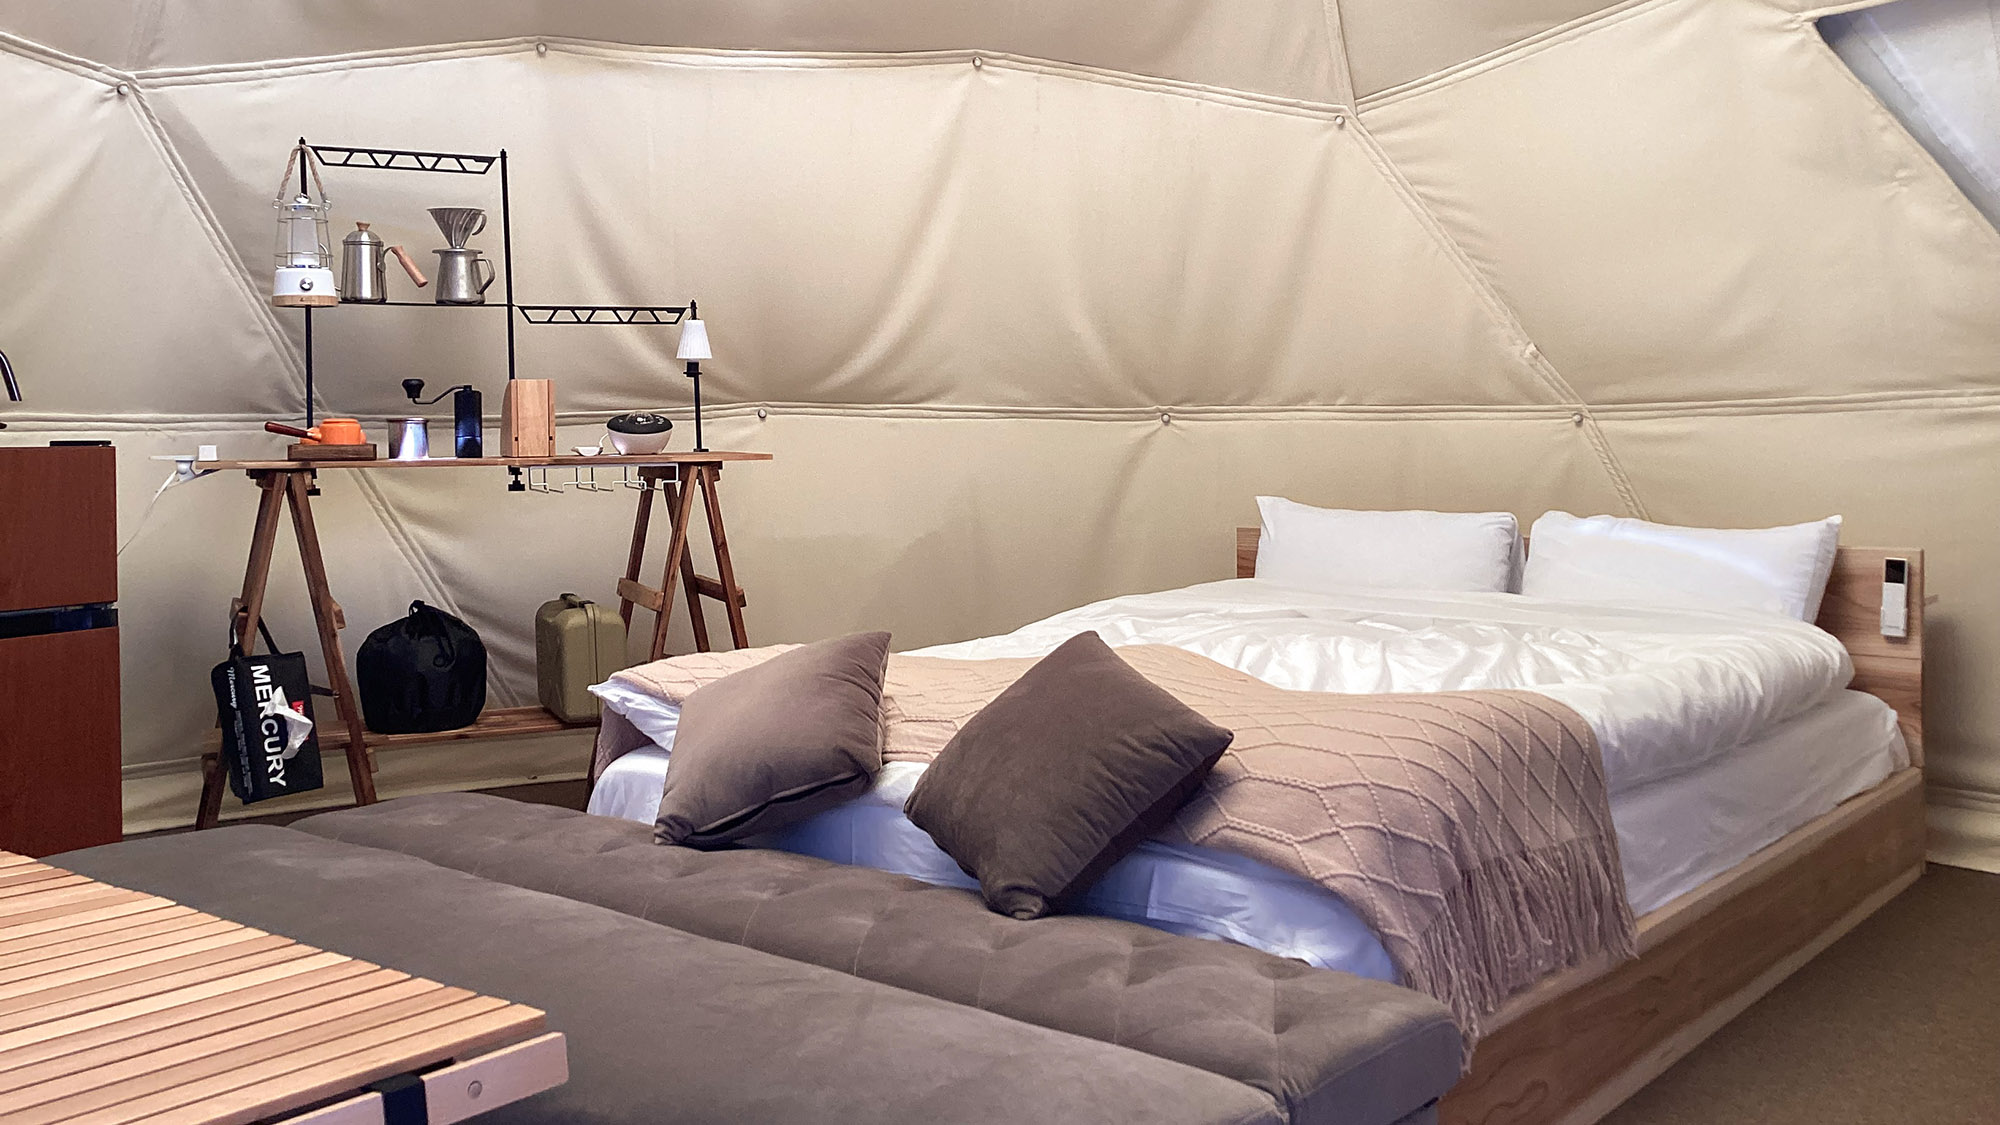 ・【ドーム型テント】ふかふかのダブルベッドでゆったりお休み頂けます